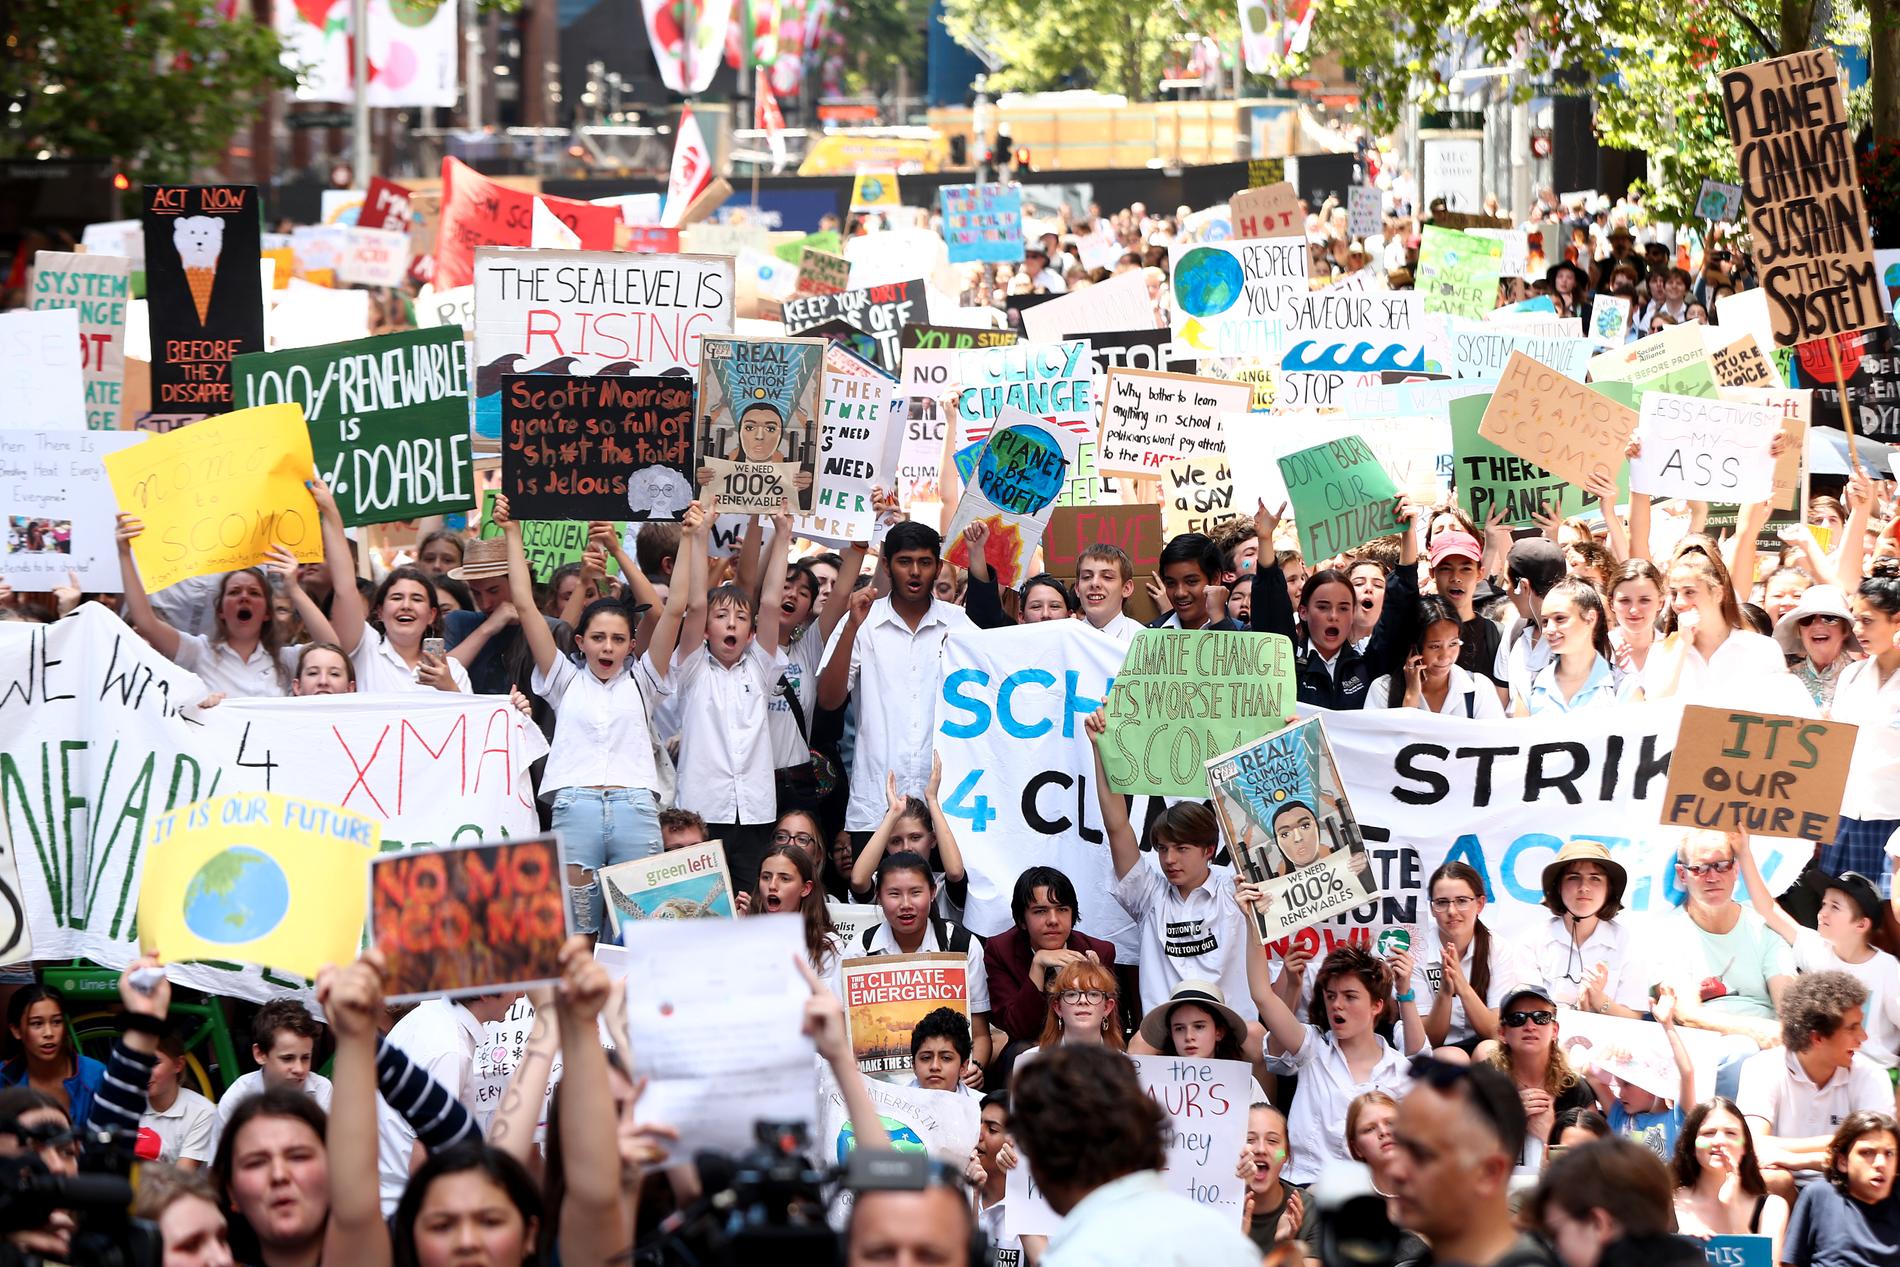 Svenska Greta Thunberg har inspirerat studenter i Australien att strejka från skolan för att uppmärksamma klimatförändringarna. Sydney, Australien. 